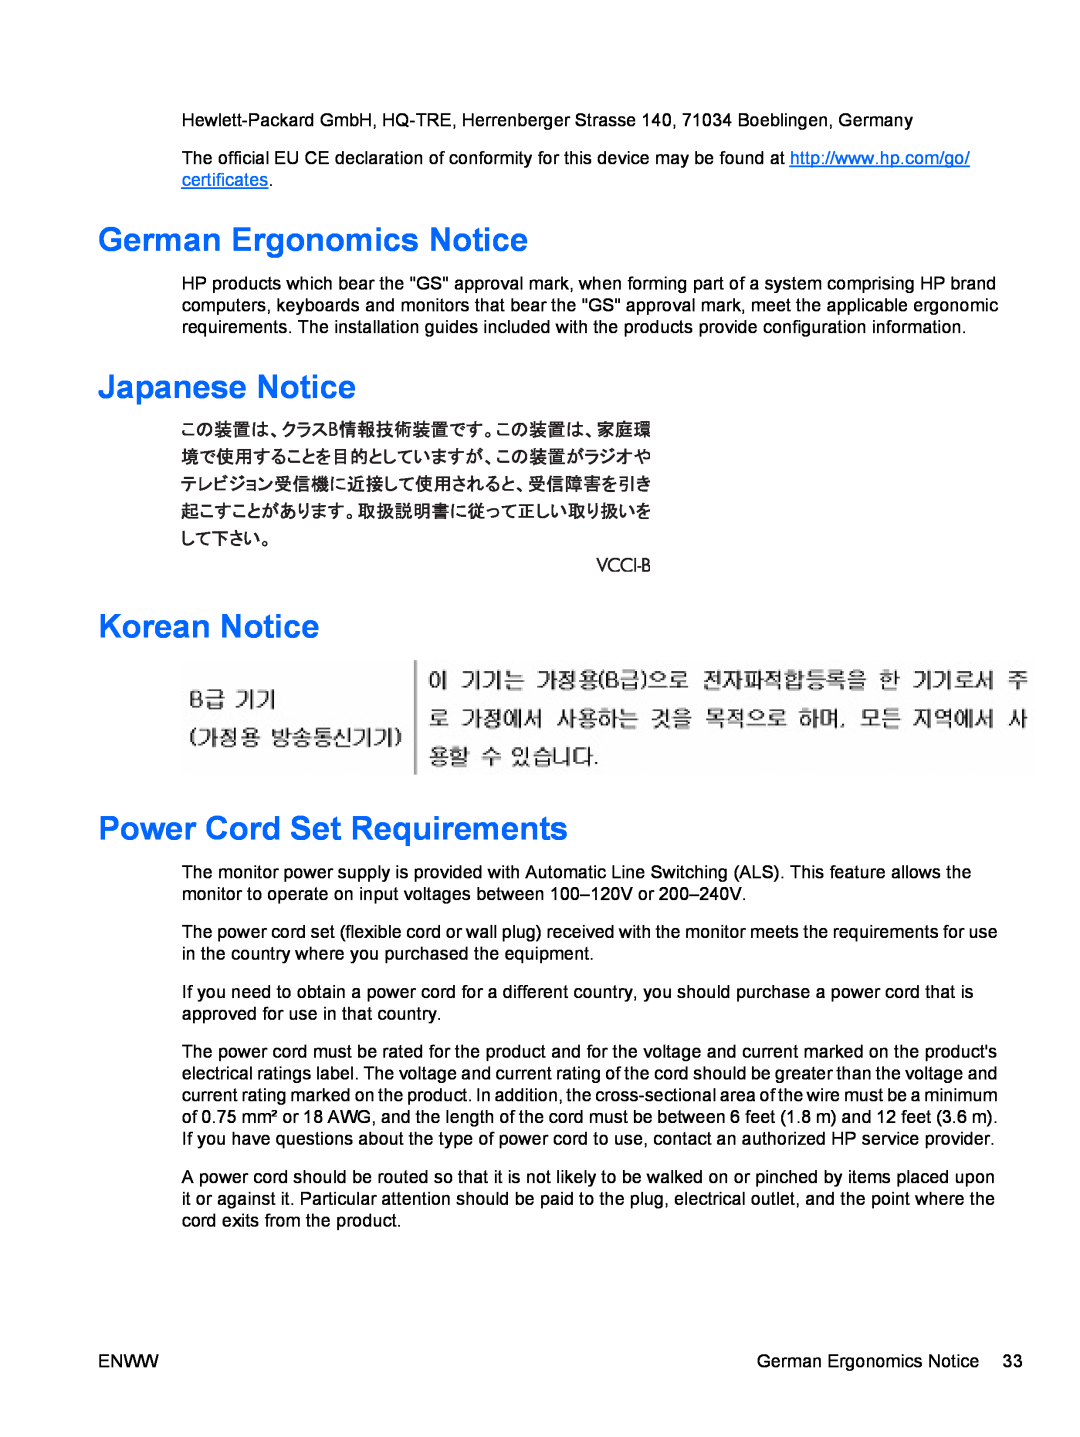 HP Q1910S, Q2210S, Q2010S manual German Ergonomics Notice, Japanese Notice Korean Notice Power Cord Set Requirements 